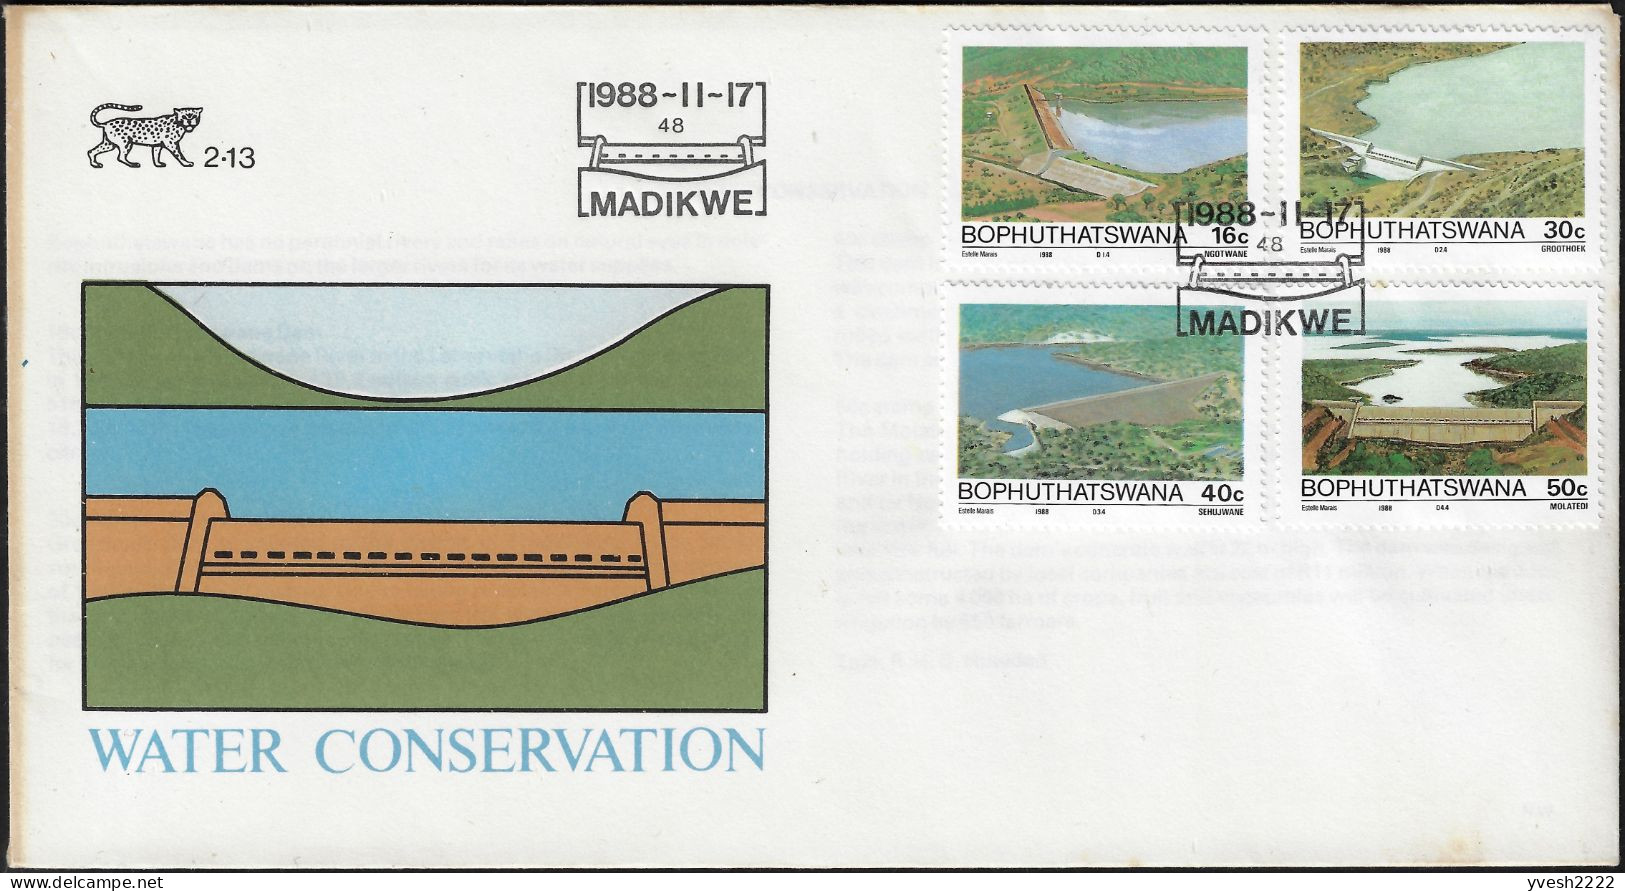 Bophuthatswana 1988 Y&T 210 à 213 Sur FDC. Conservation De L'eau, Barrages Et Réserves D'eau - Water